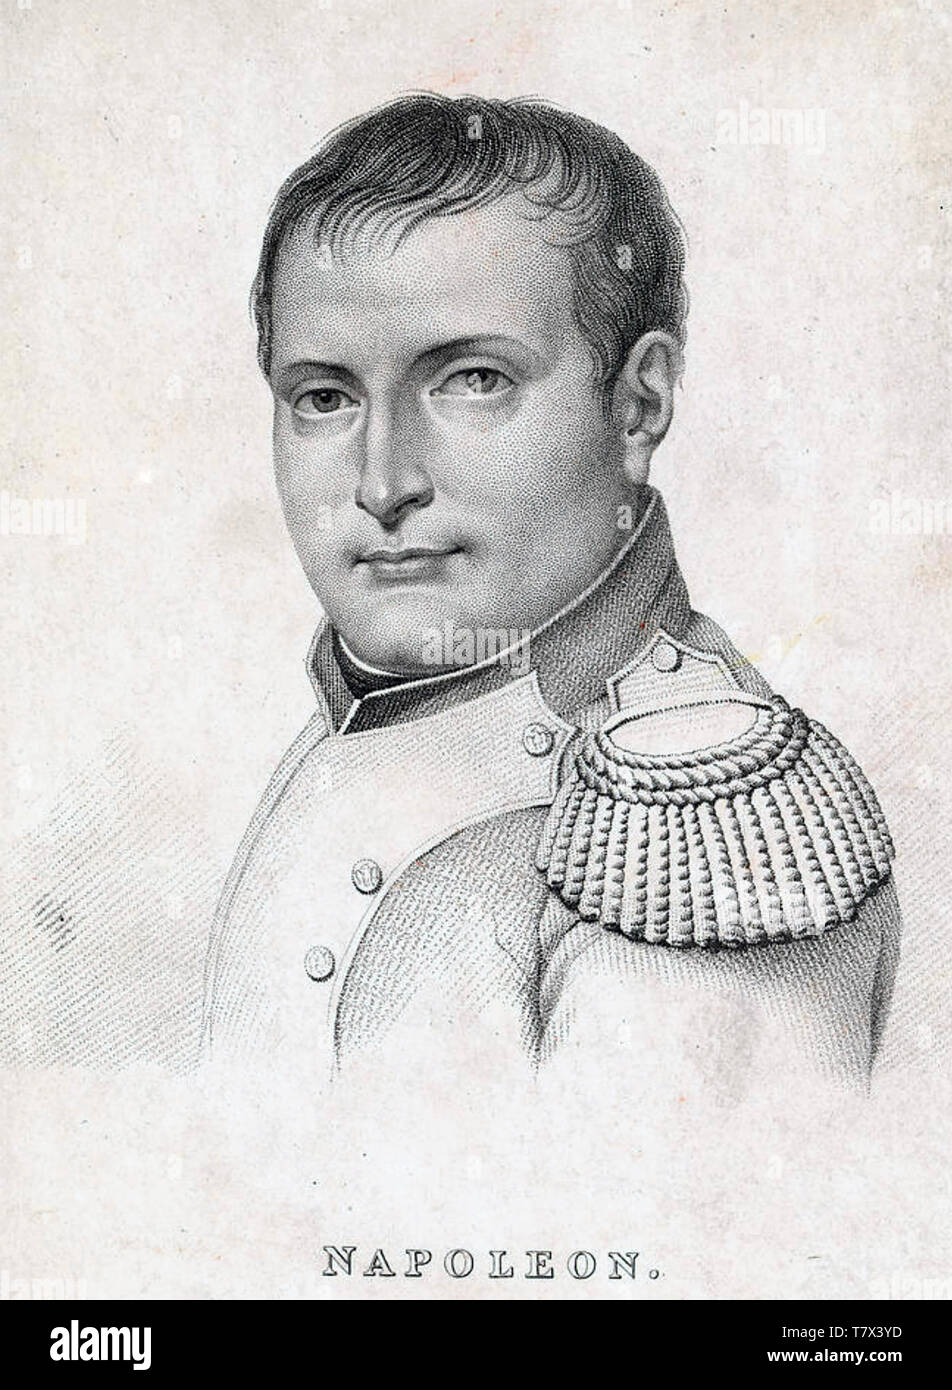 Napoleón Bonaparte (1769-1821), estadista y líder militar francesa alrededor de 1812 Foto de stock